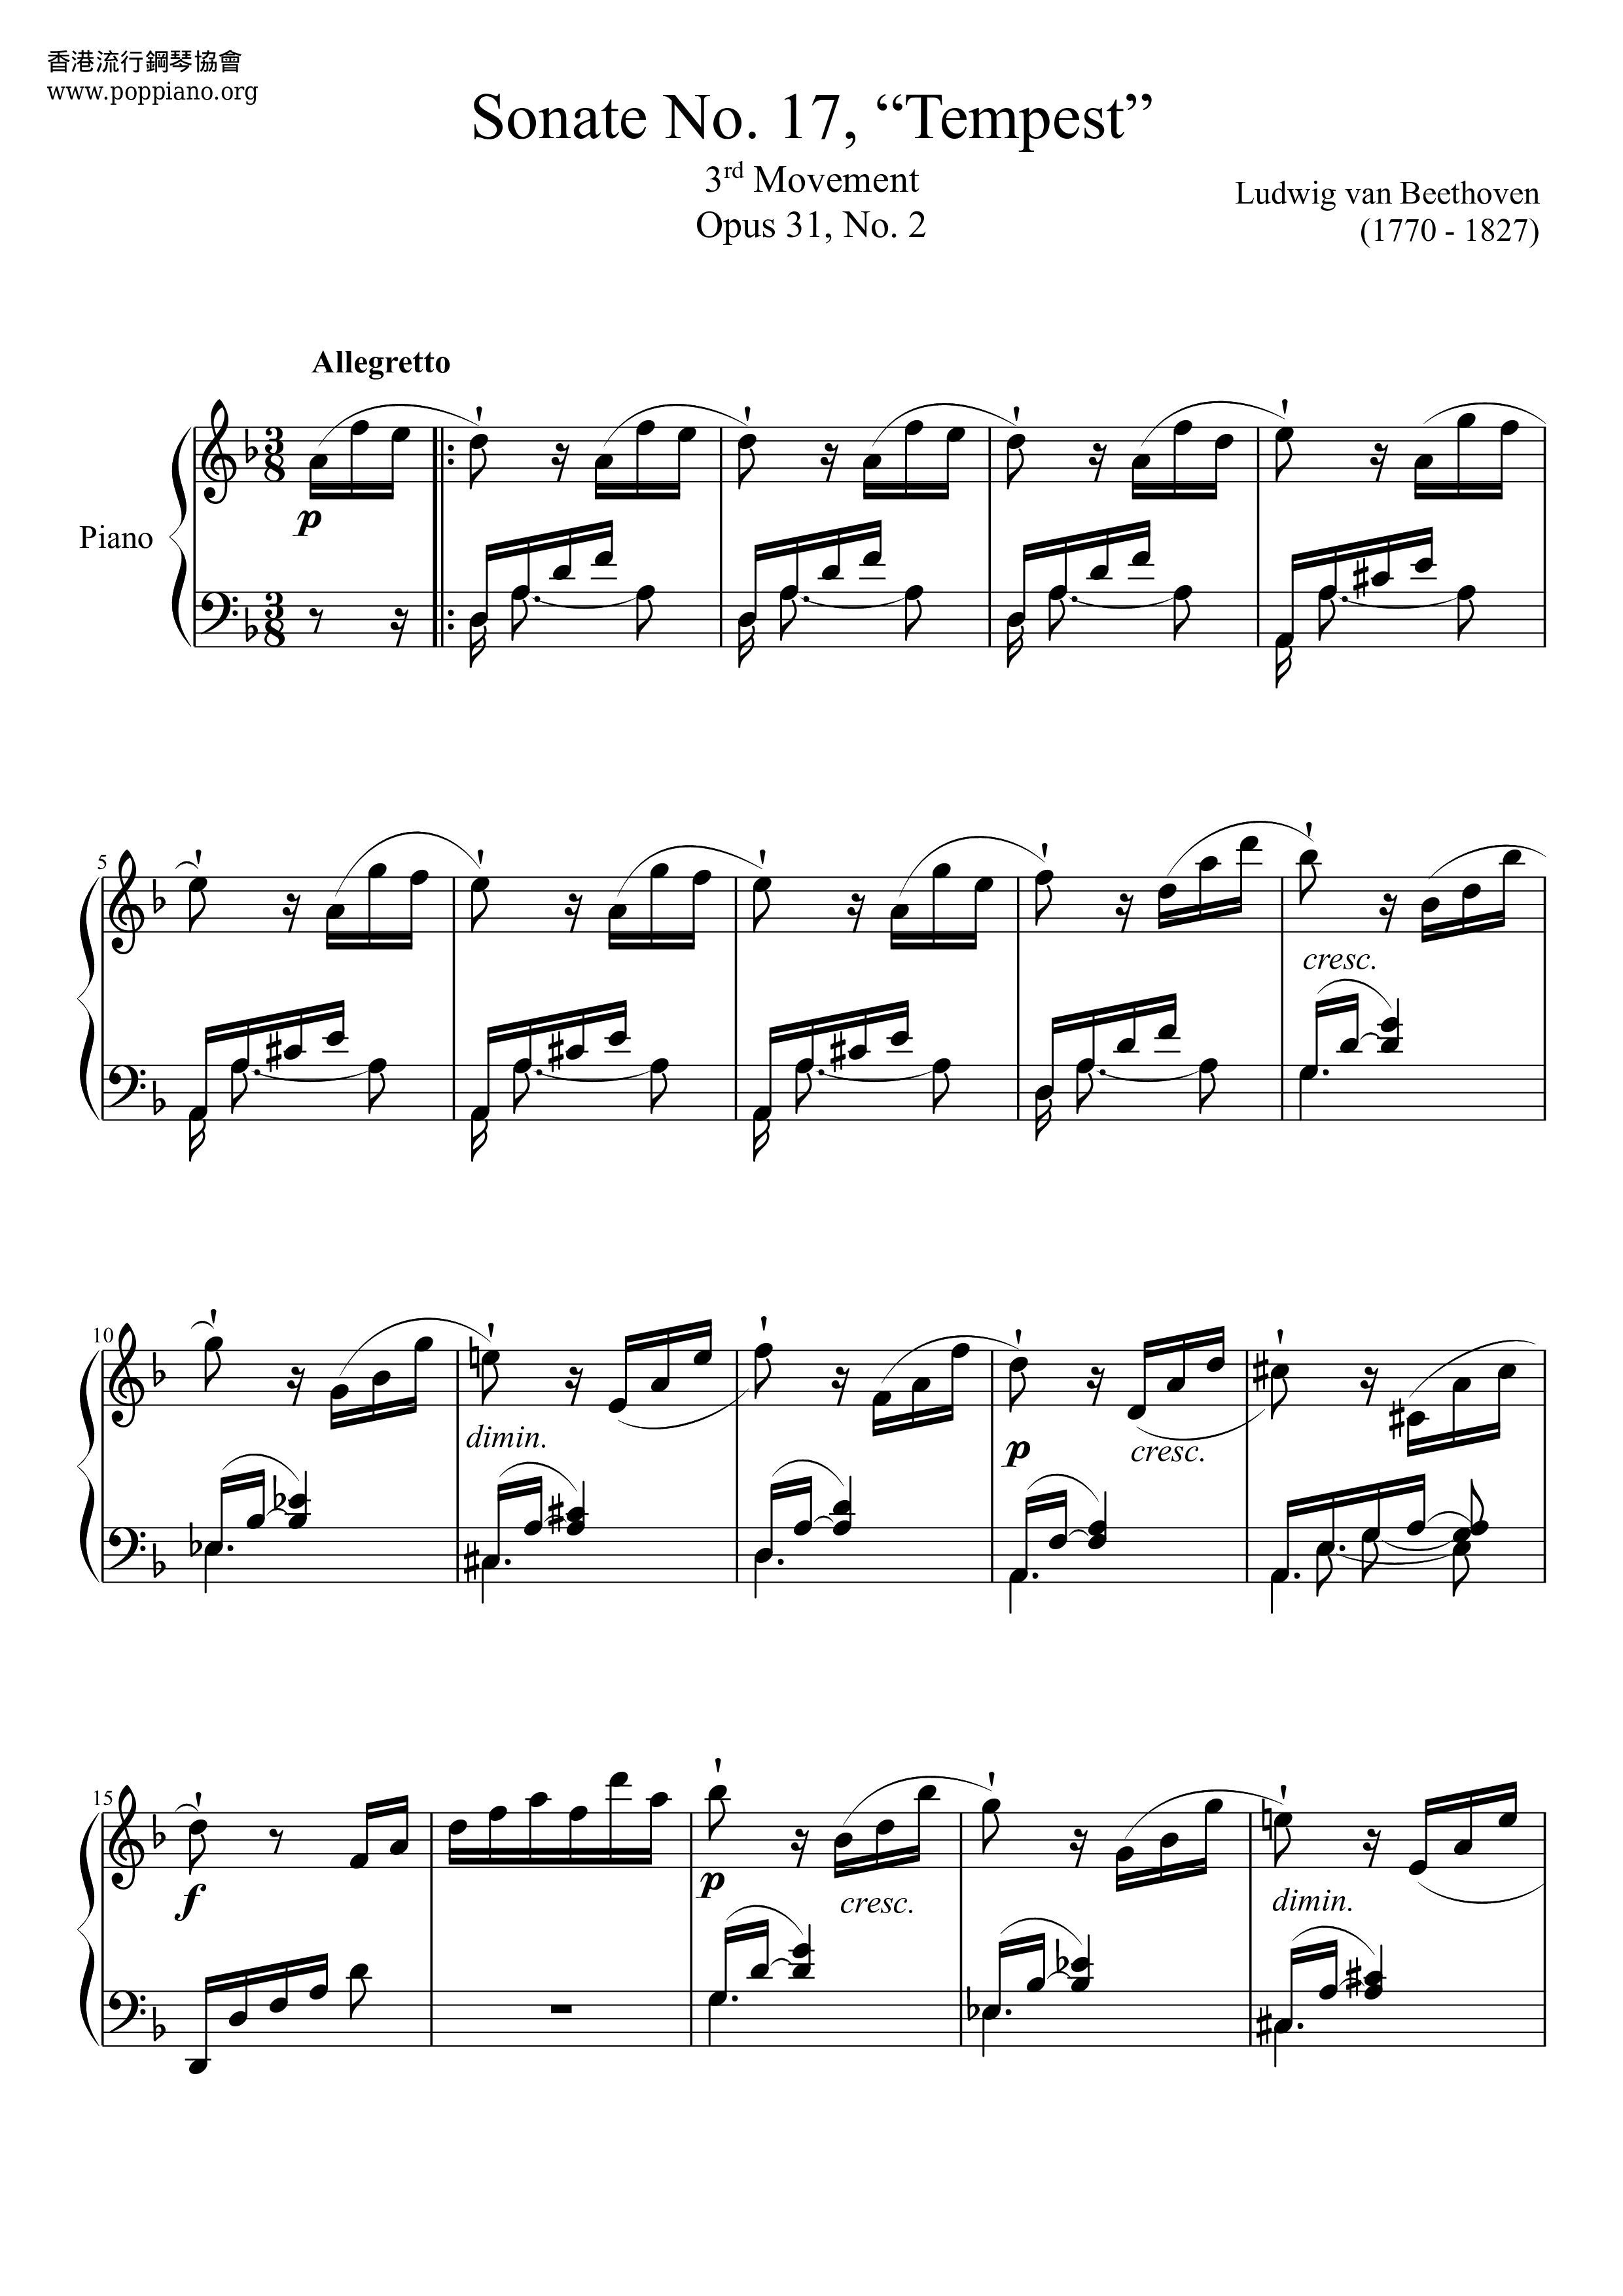 Piano Sonata No. 17 Tempest 3rd Movement Score